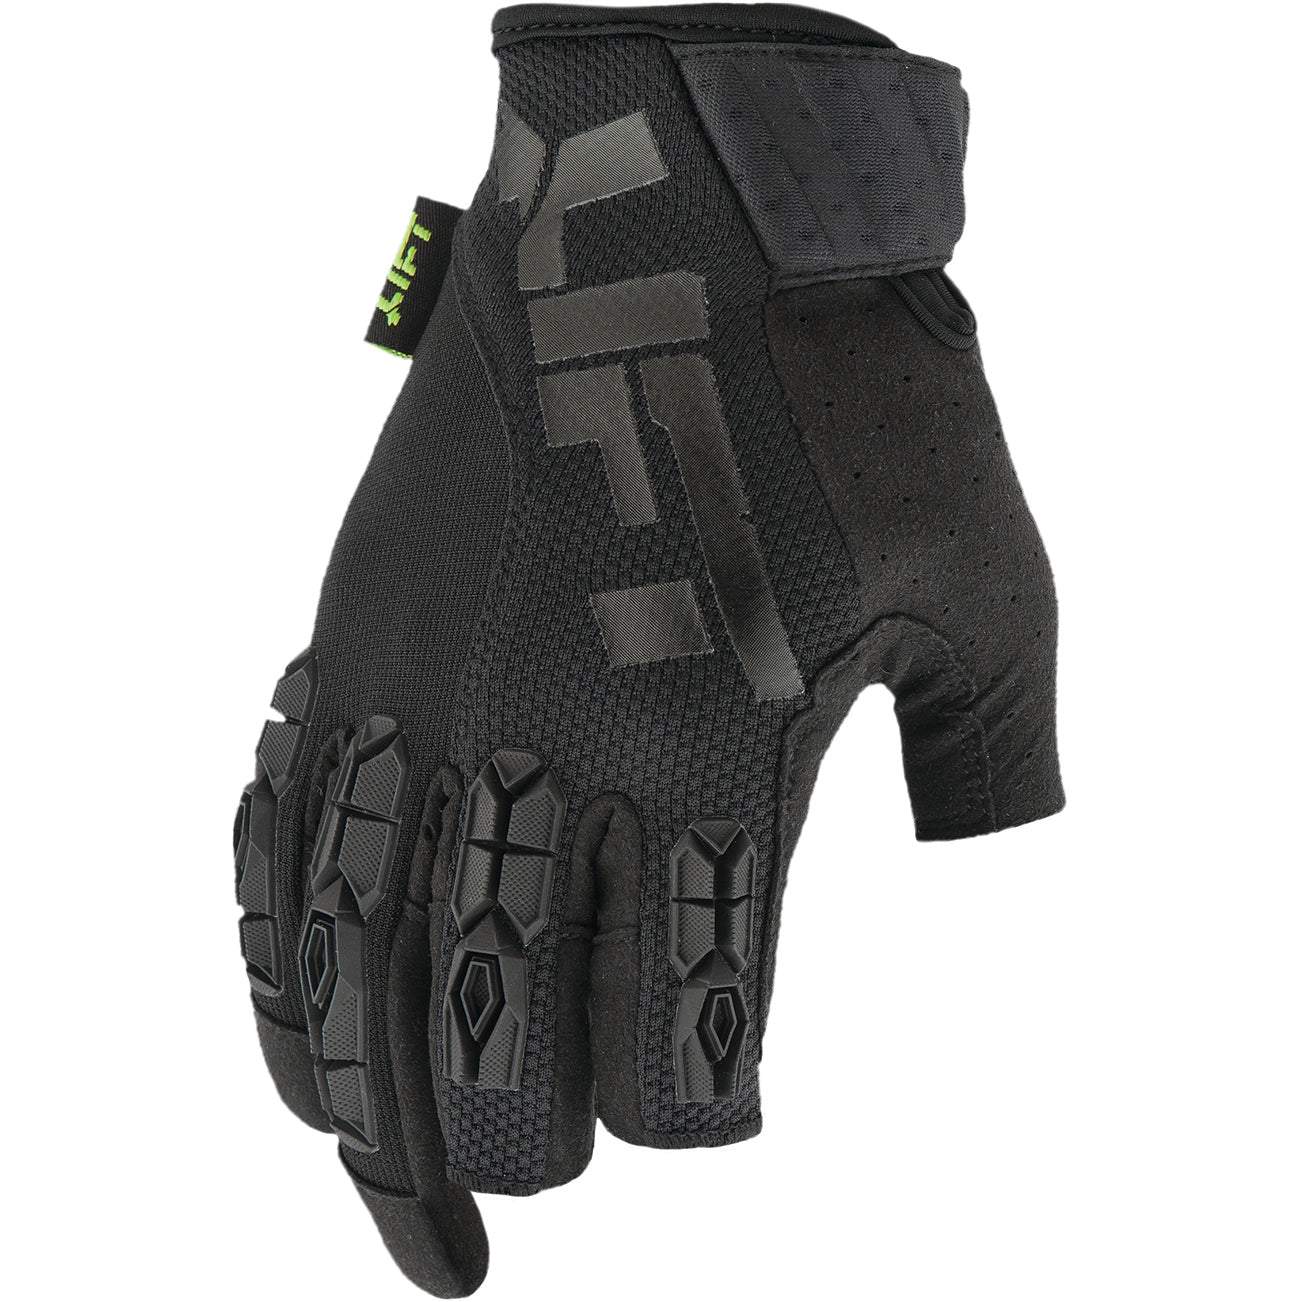 Lift Safety Framed Glove | Black/Black